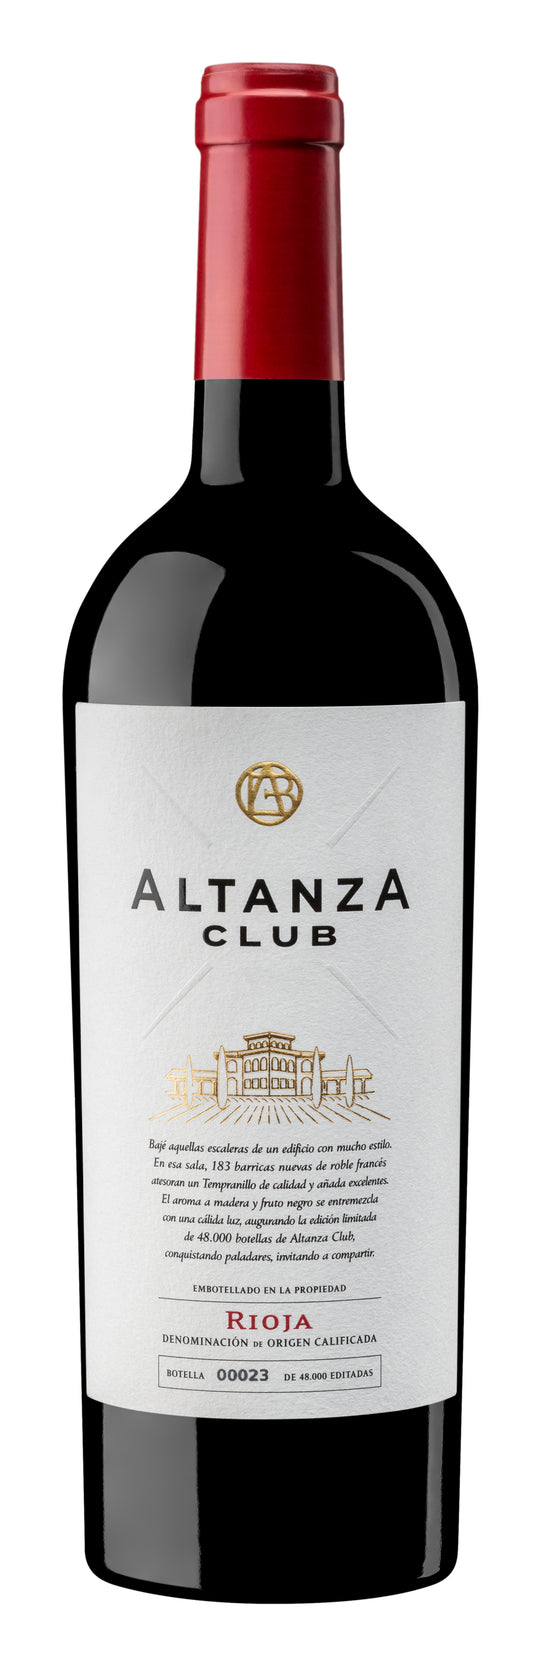 Club Altanza Reserva Rioja - 2014 (750ml)